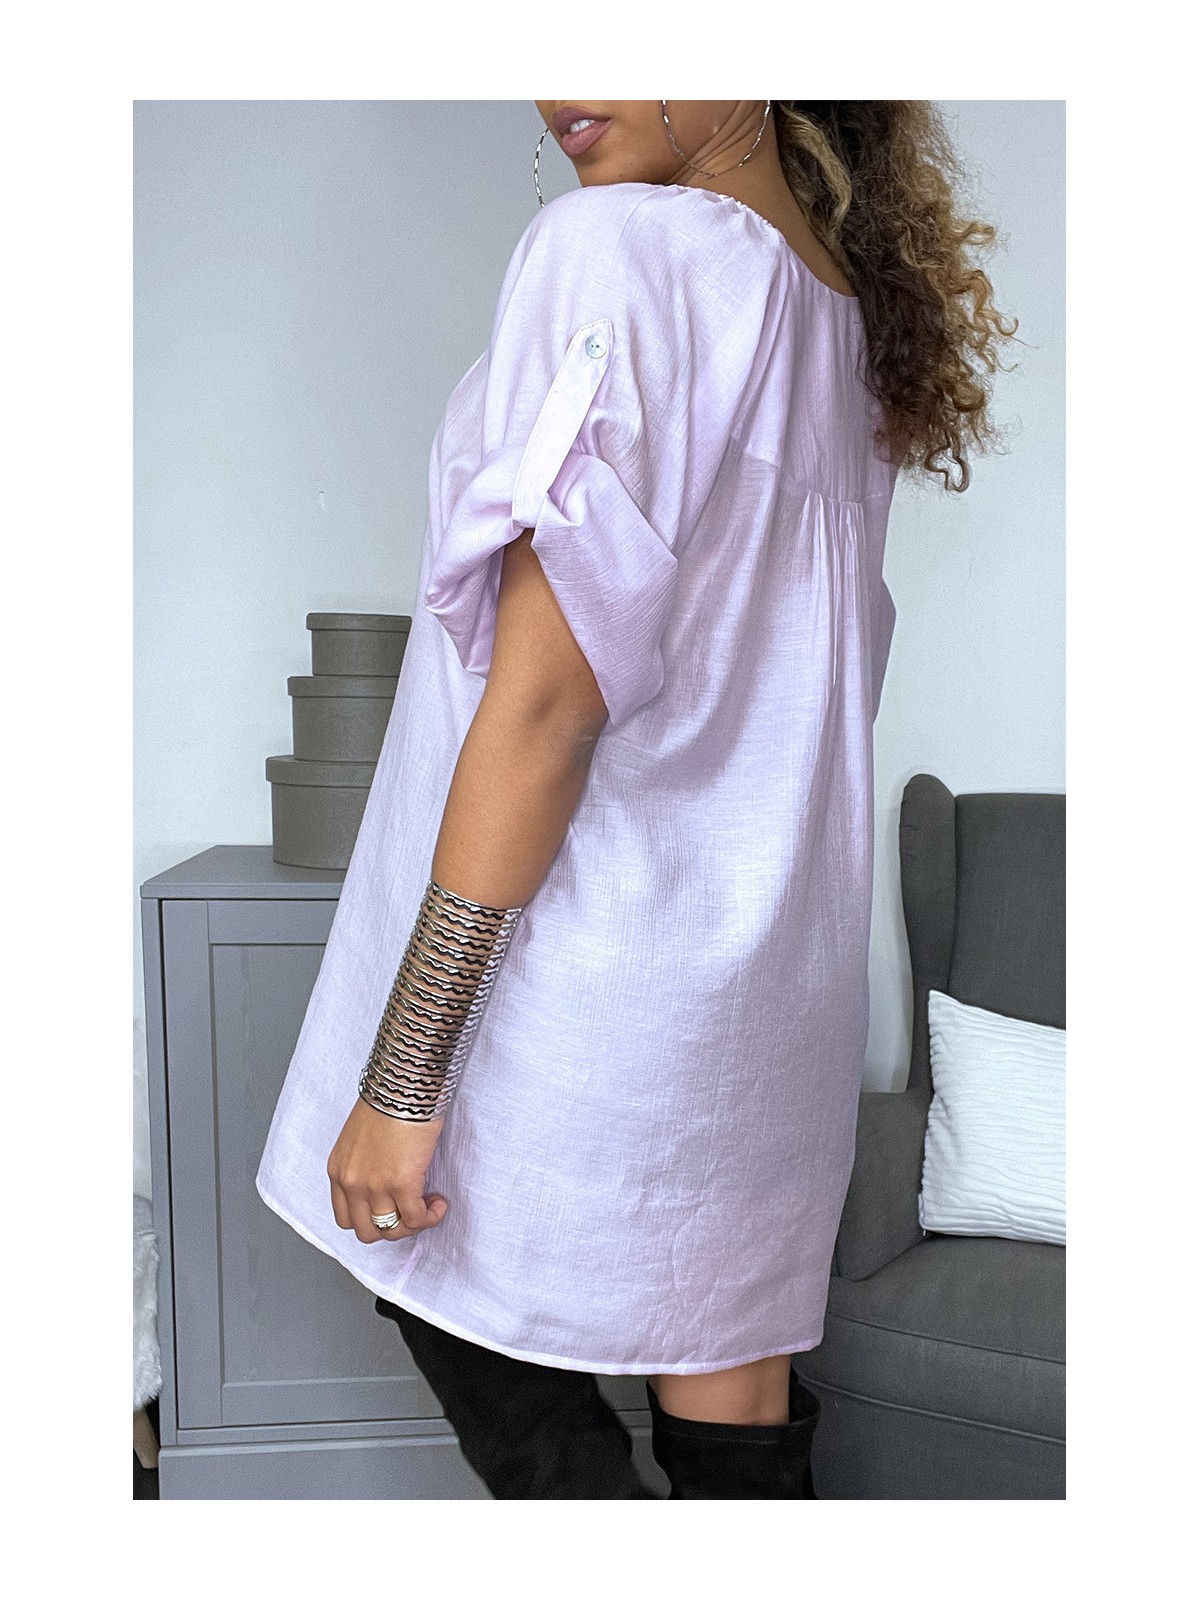 Robe tunique en soie ample satinée violette - 3